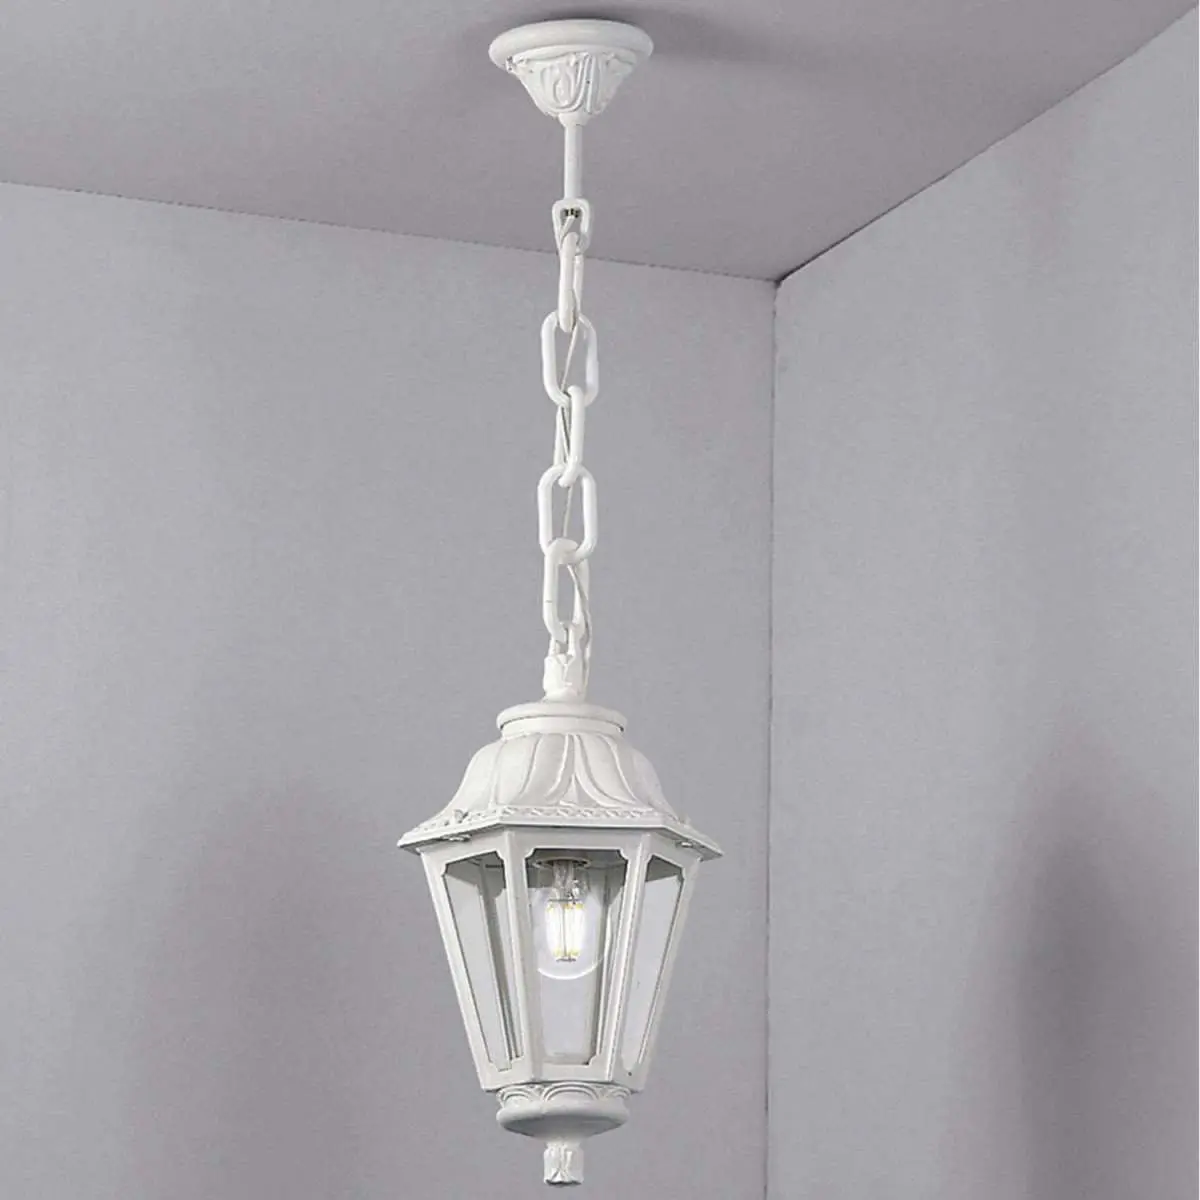 Sichem Anna E27 White Hanging Outdoor Lantern